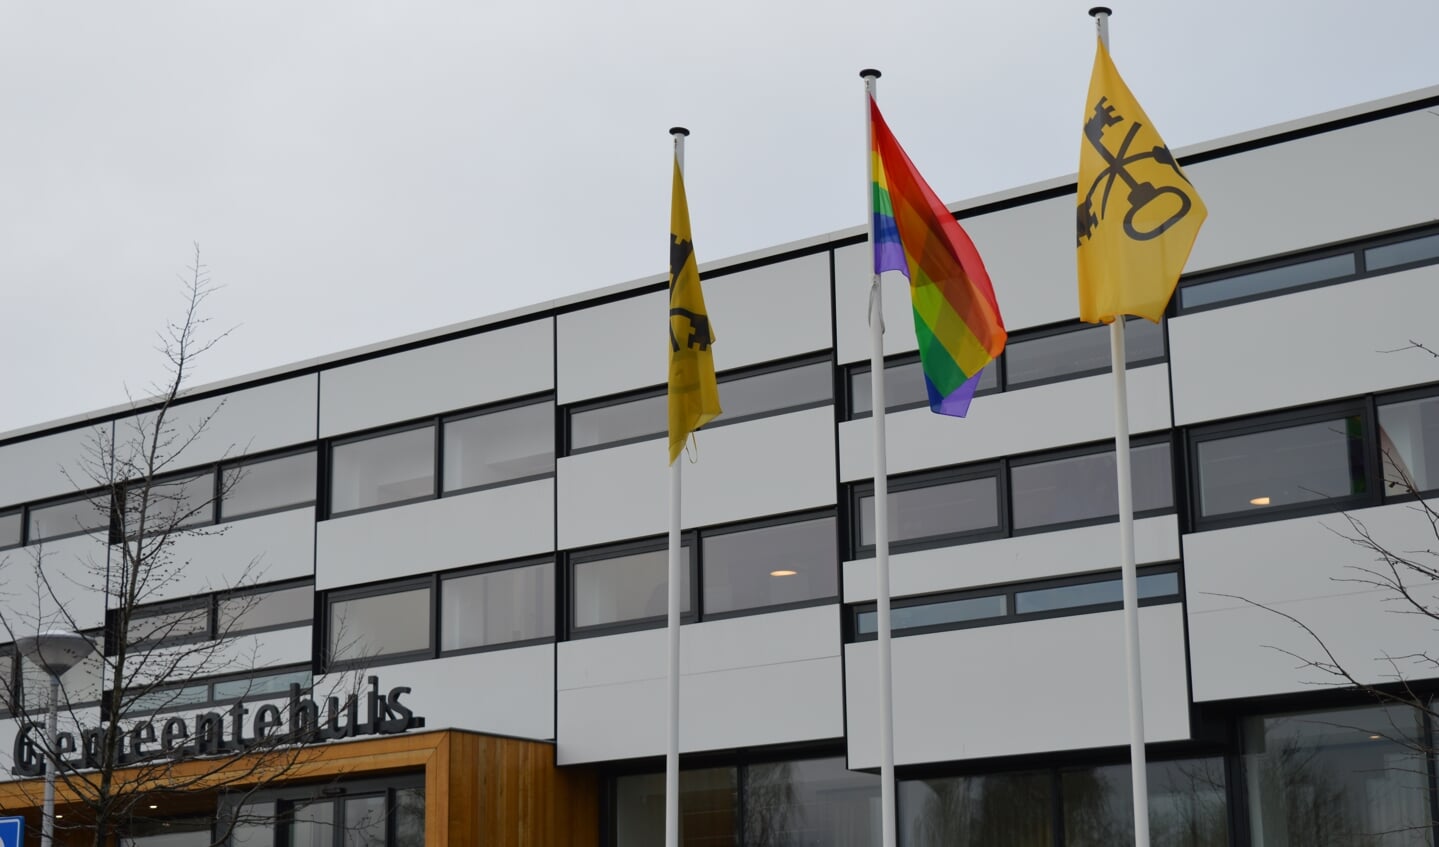 De VVD wil dat de lokale overheid bepaalt wanneer welke vlag op het gemeentehuis wordt gehesen. Daartoe heeft de Waddinxveense raad inmiddels een motie aangenomen.